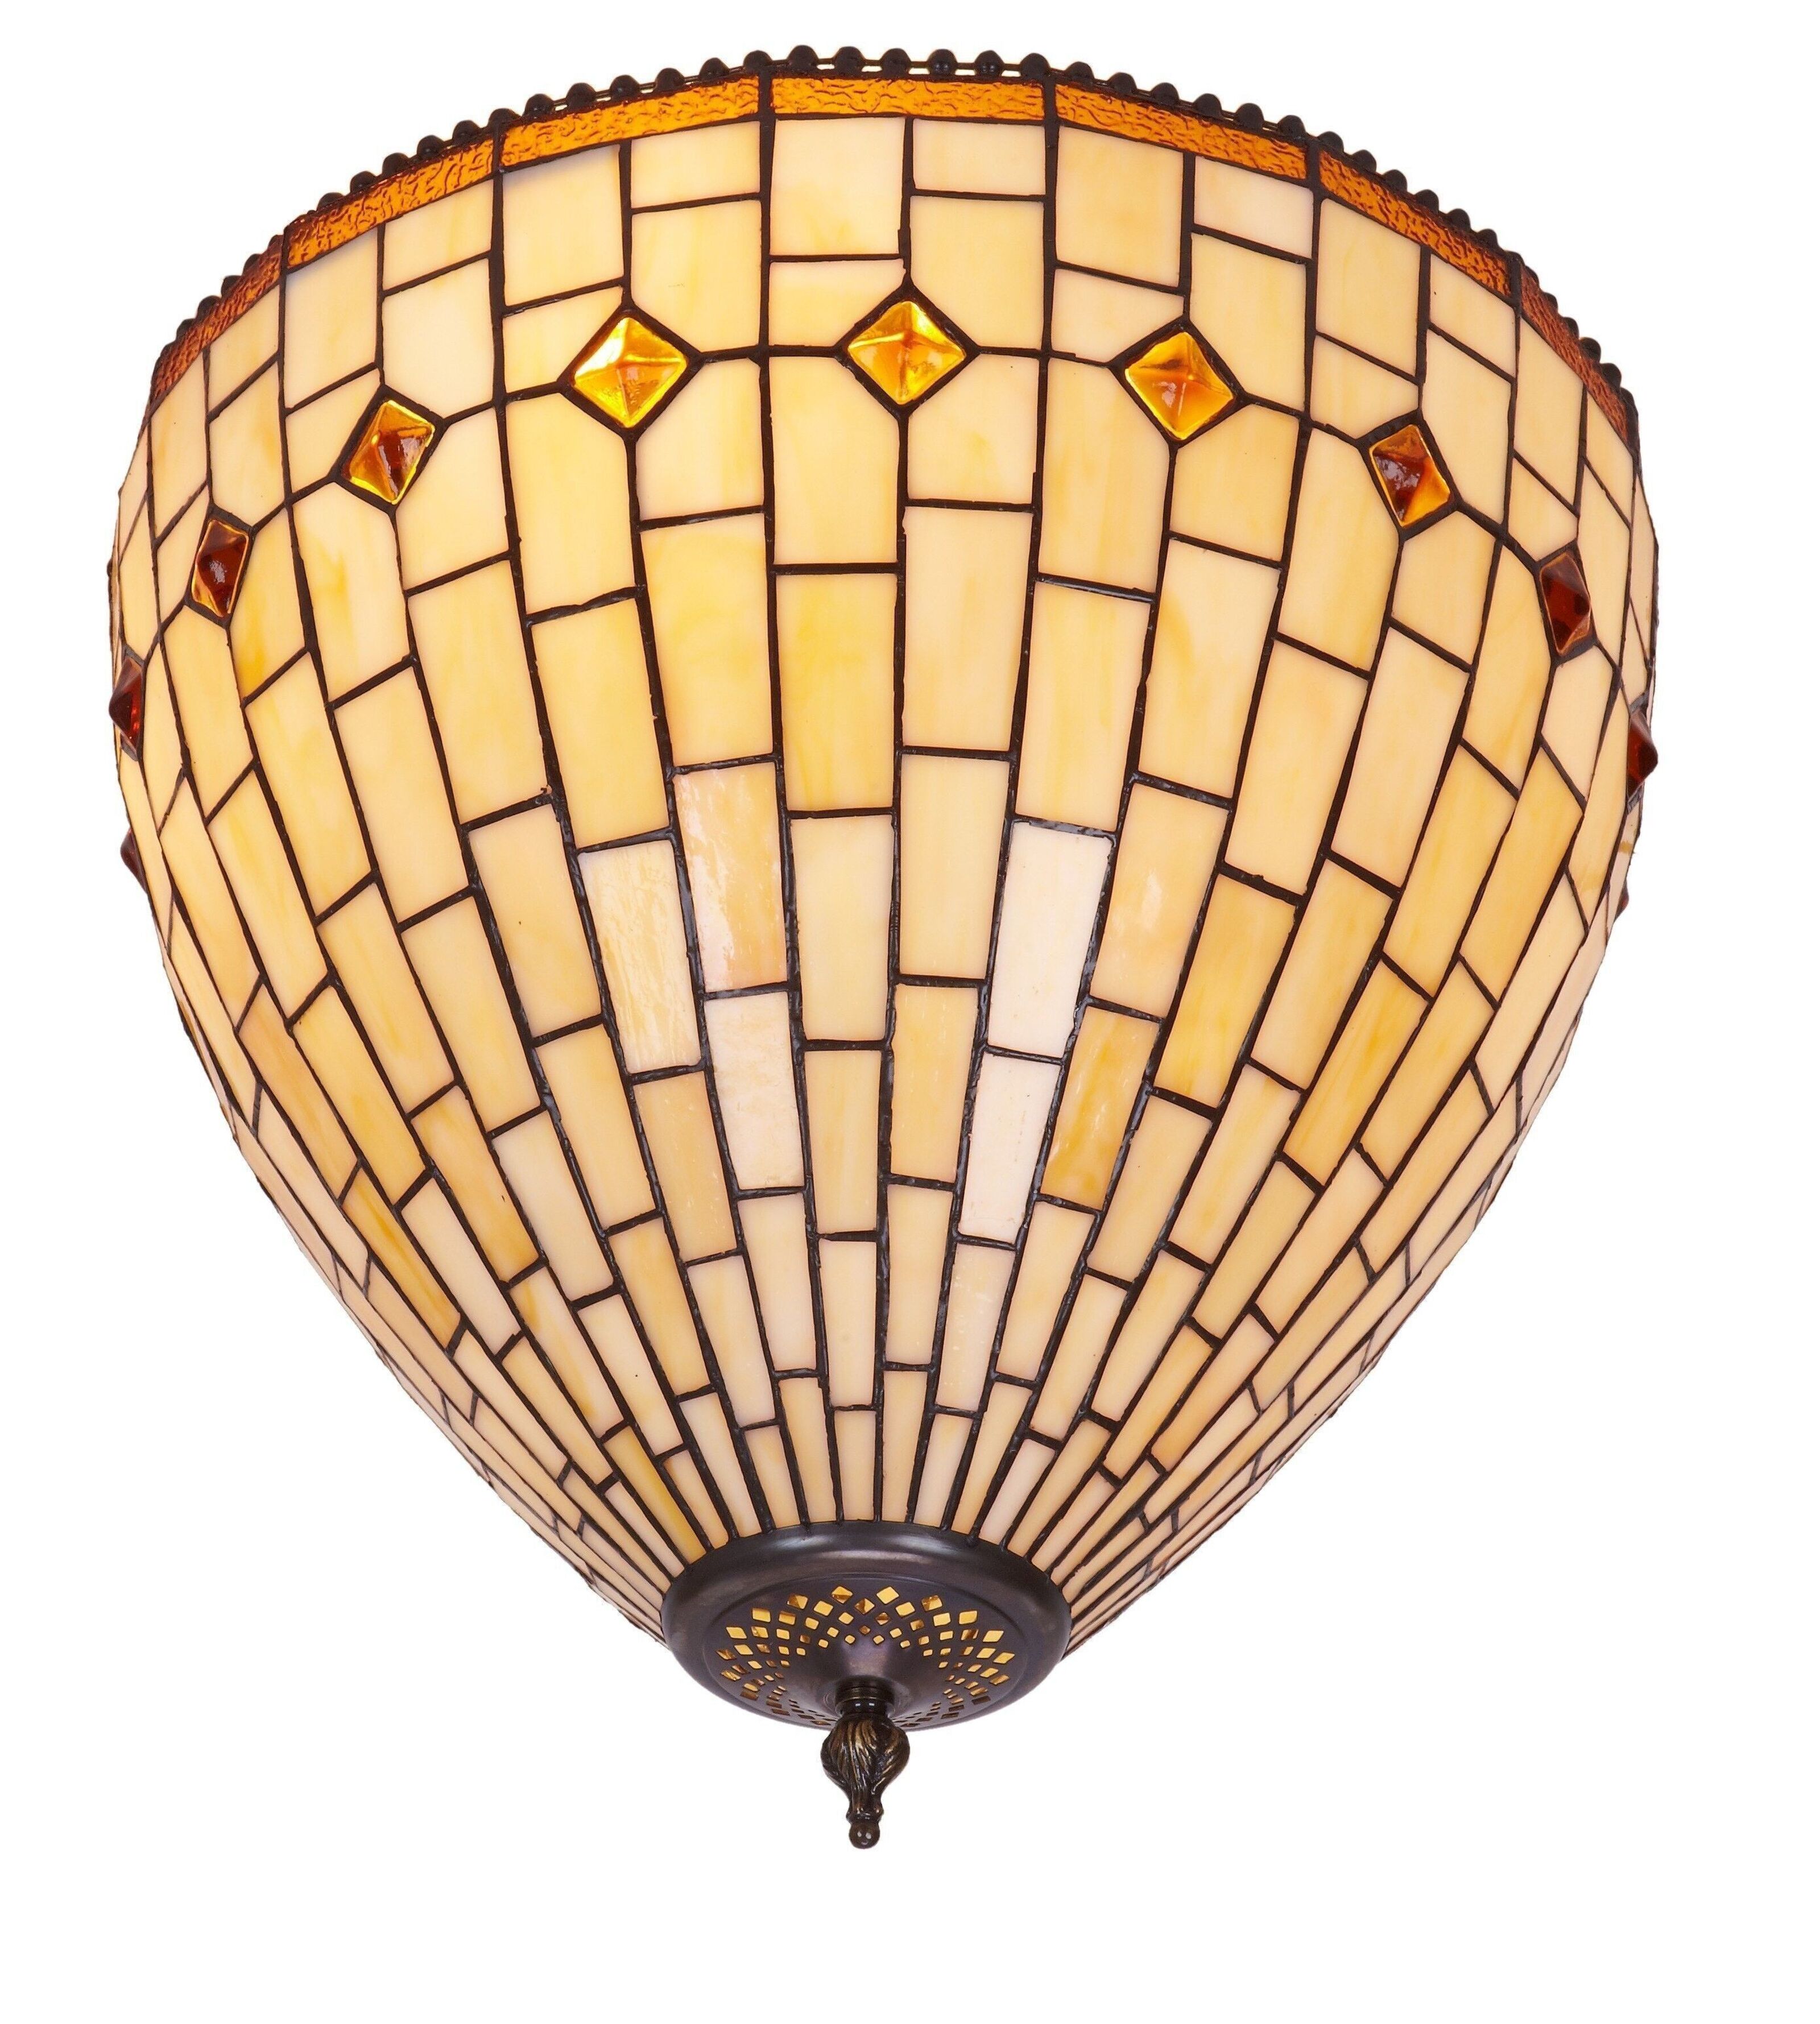 Art 40cm screen LG244300 lamp wholesale Buy Tiffany Series Ceiling diameter